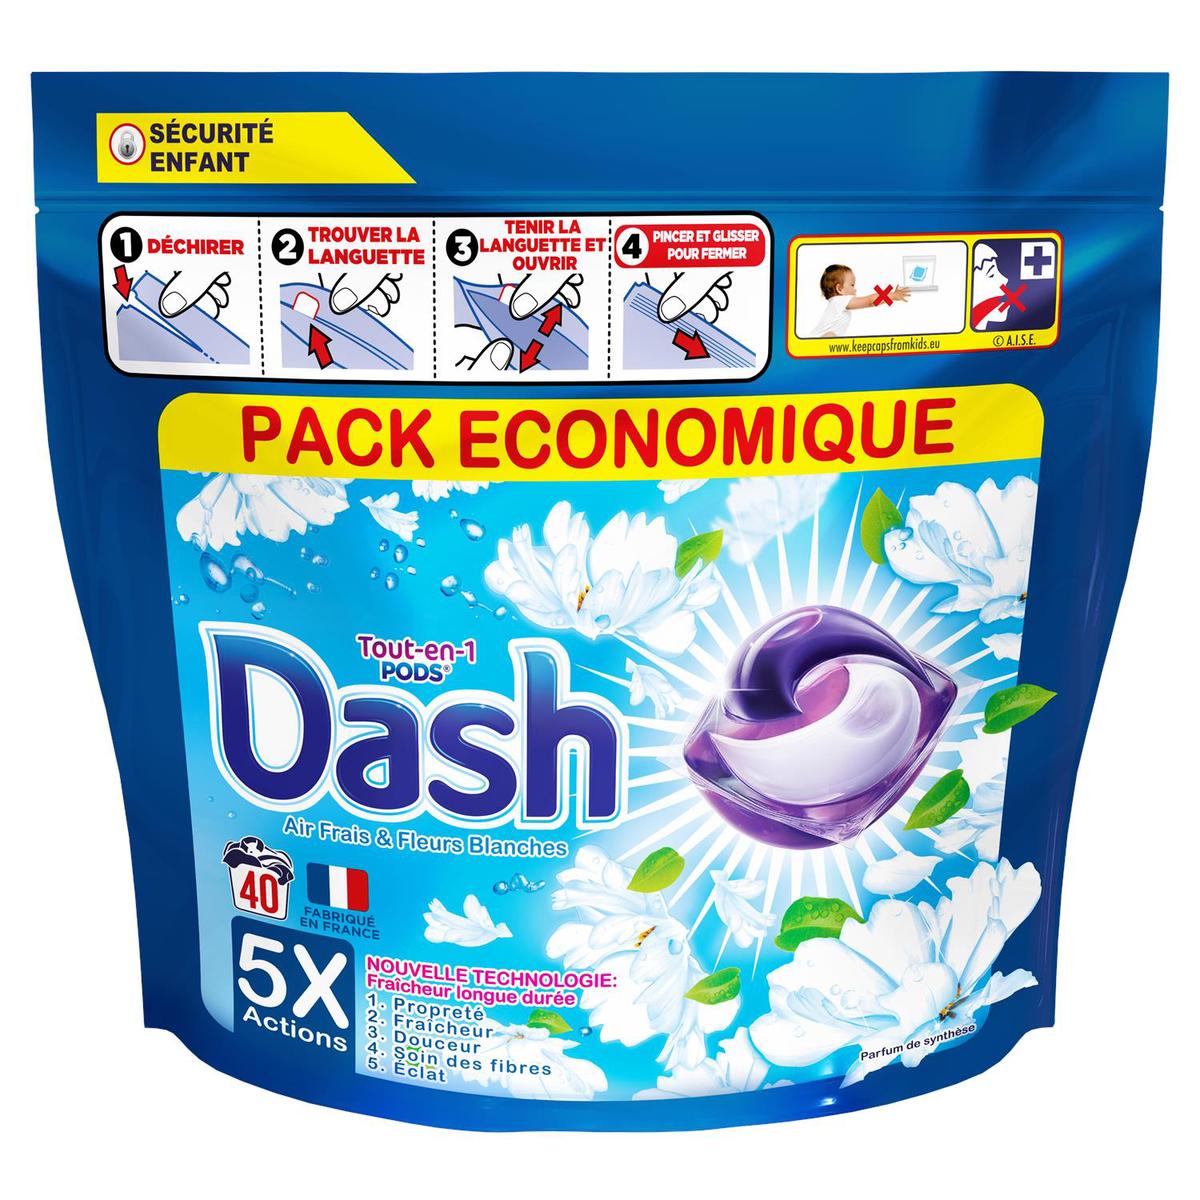 Achat Dash Lessive Capsule Tout-En-1 Pods Ambre & Orchidee, 19 capsules